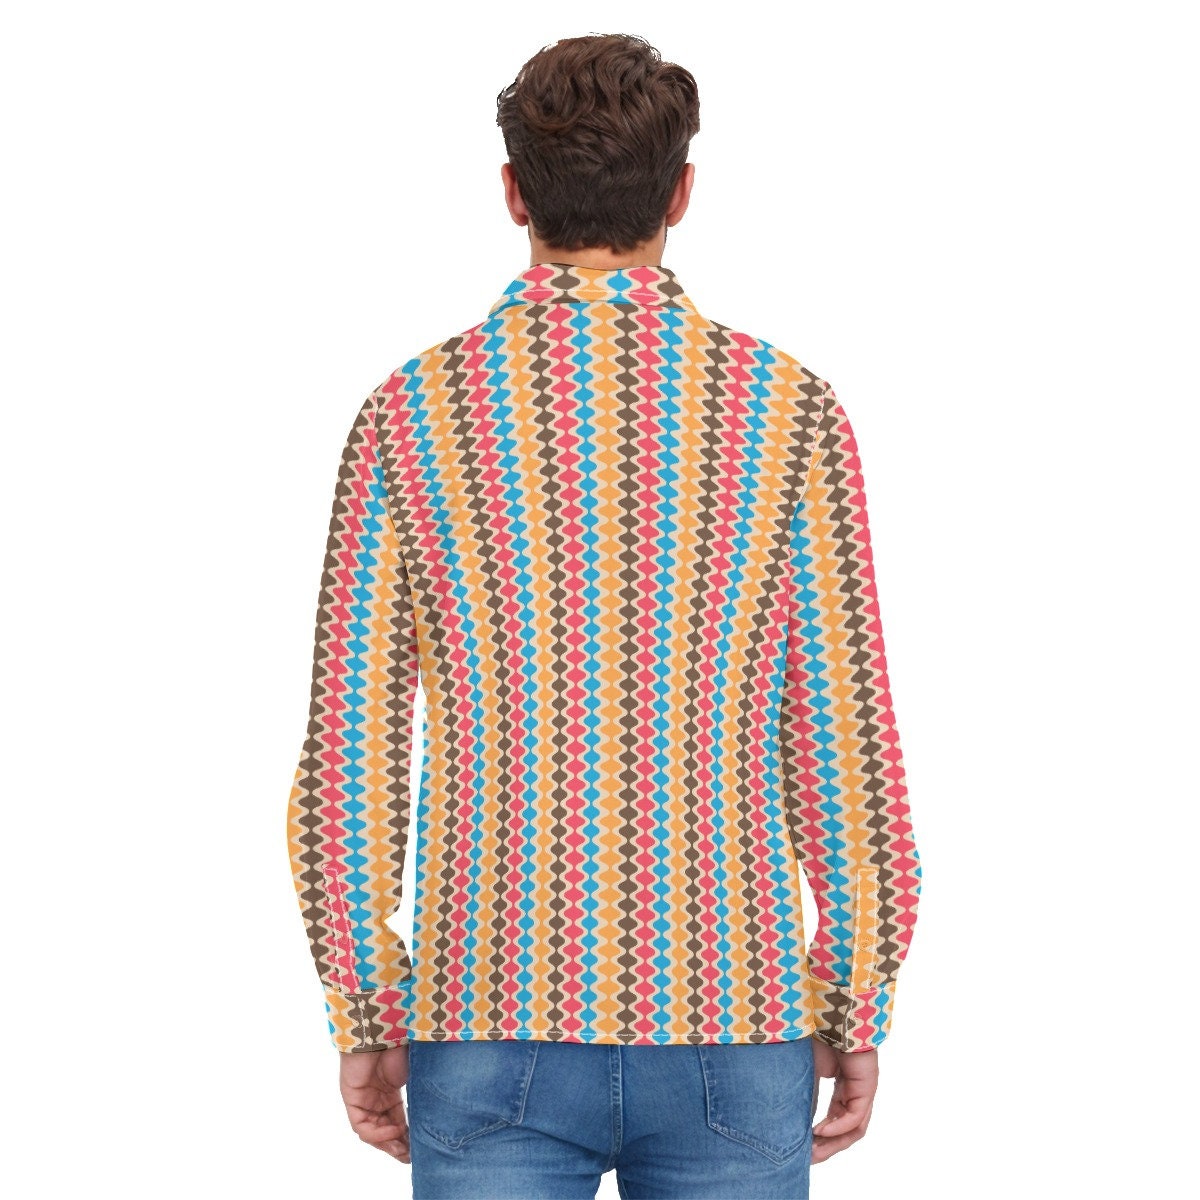 Vintage-Shirt im 70er-Jahre-Stil, Groovy-Streifen-Shirt für Herren, 70er-Jahre-Kleidung für Herren, Retro-Shirt für Herren, Hippie-Shirt für Herren, 70er-Shirt für Herren, 70er-Jahre-inspiriertes Hemd